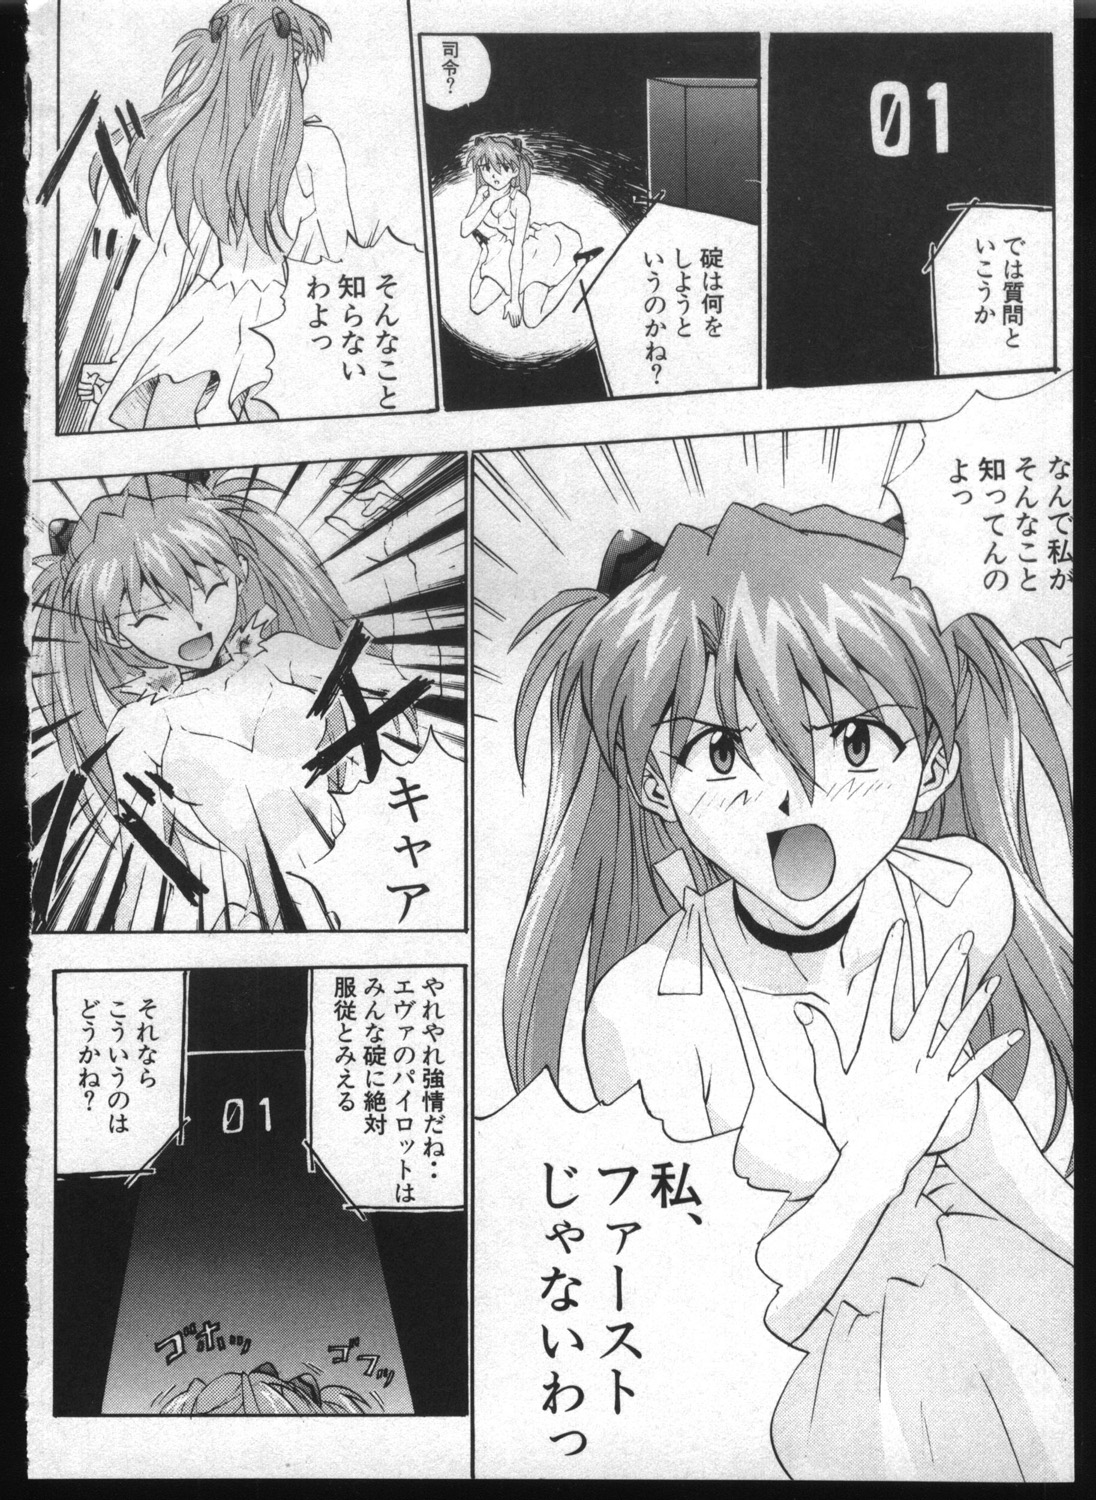 [Anthology] Shitsurakuen 7 | Paradise Lost 7 (Neon Genesis Evangelion) page 6 full